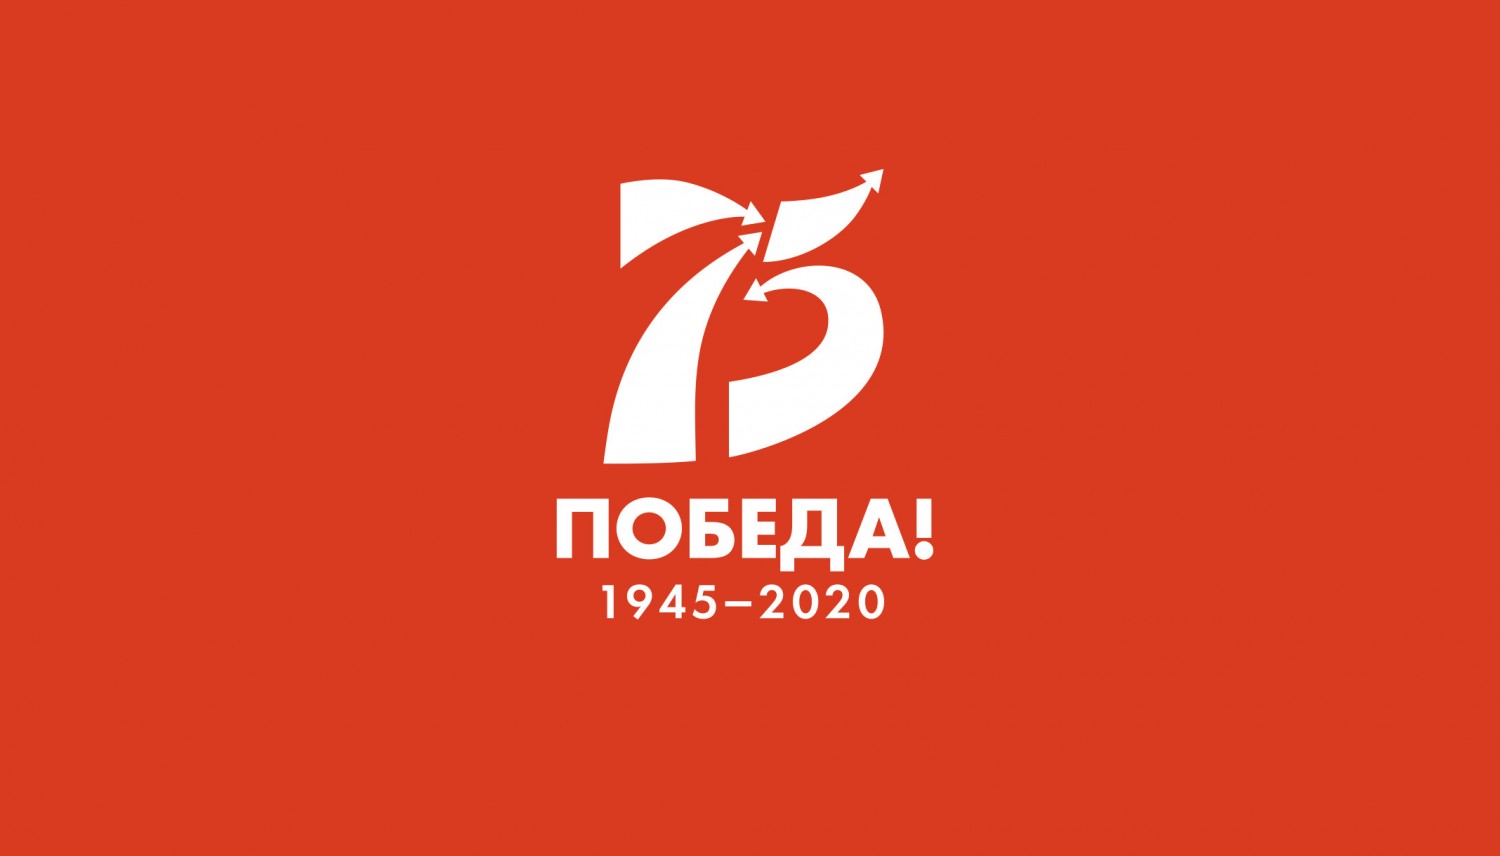 Рыбновская районная Дума поздравляет с 75-й годовщиной Победы в Великой Отечественной войне